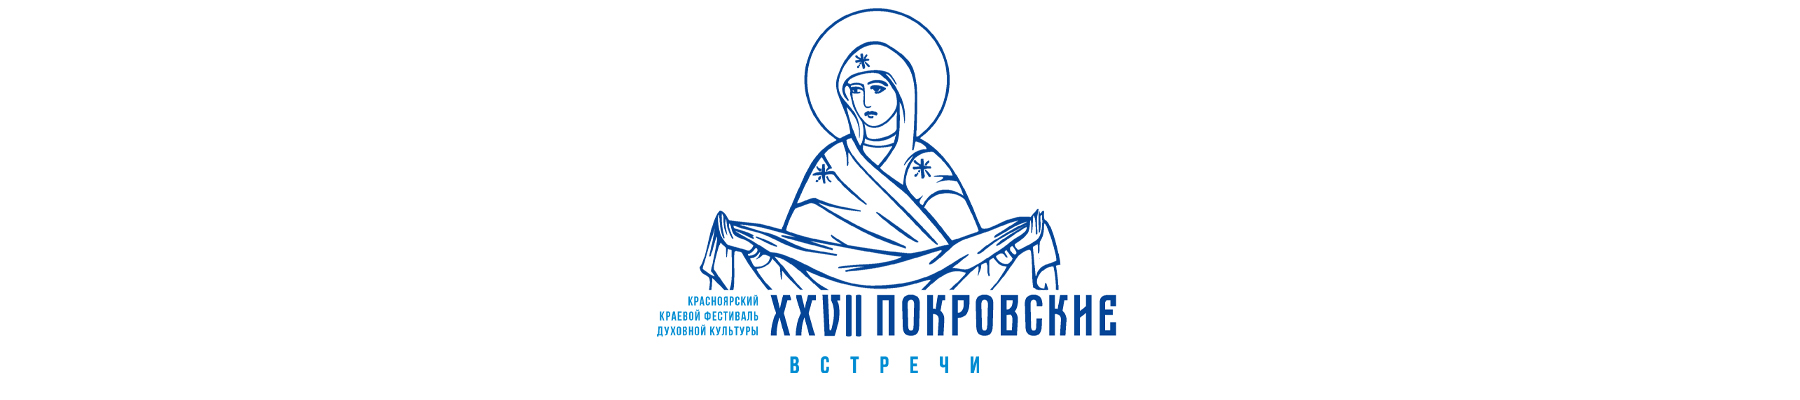 XXVII Красноярский краевой фестиваль духовной культуры «Покровские встречи»